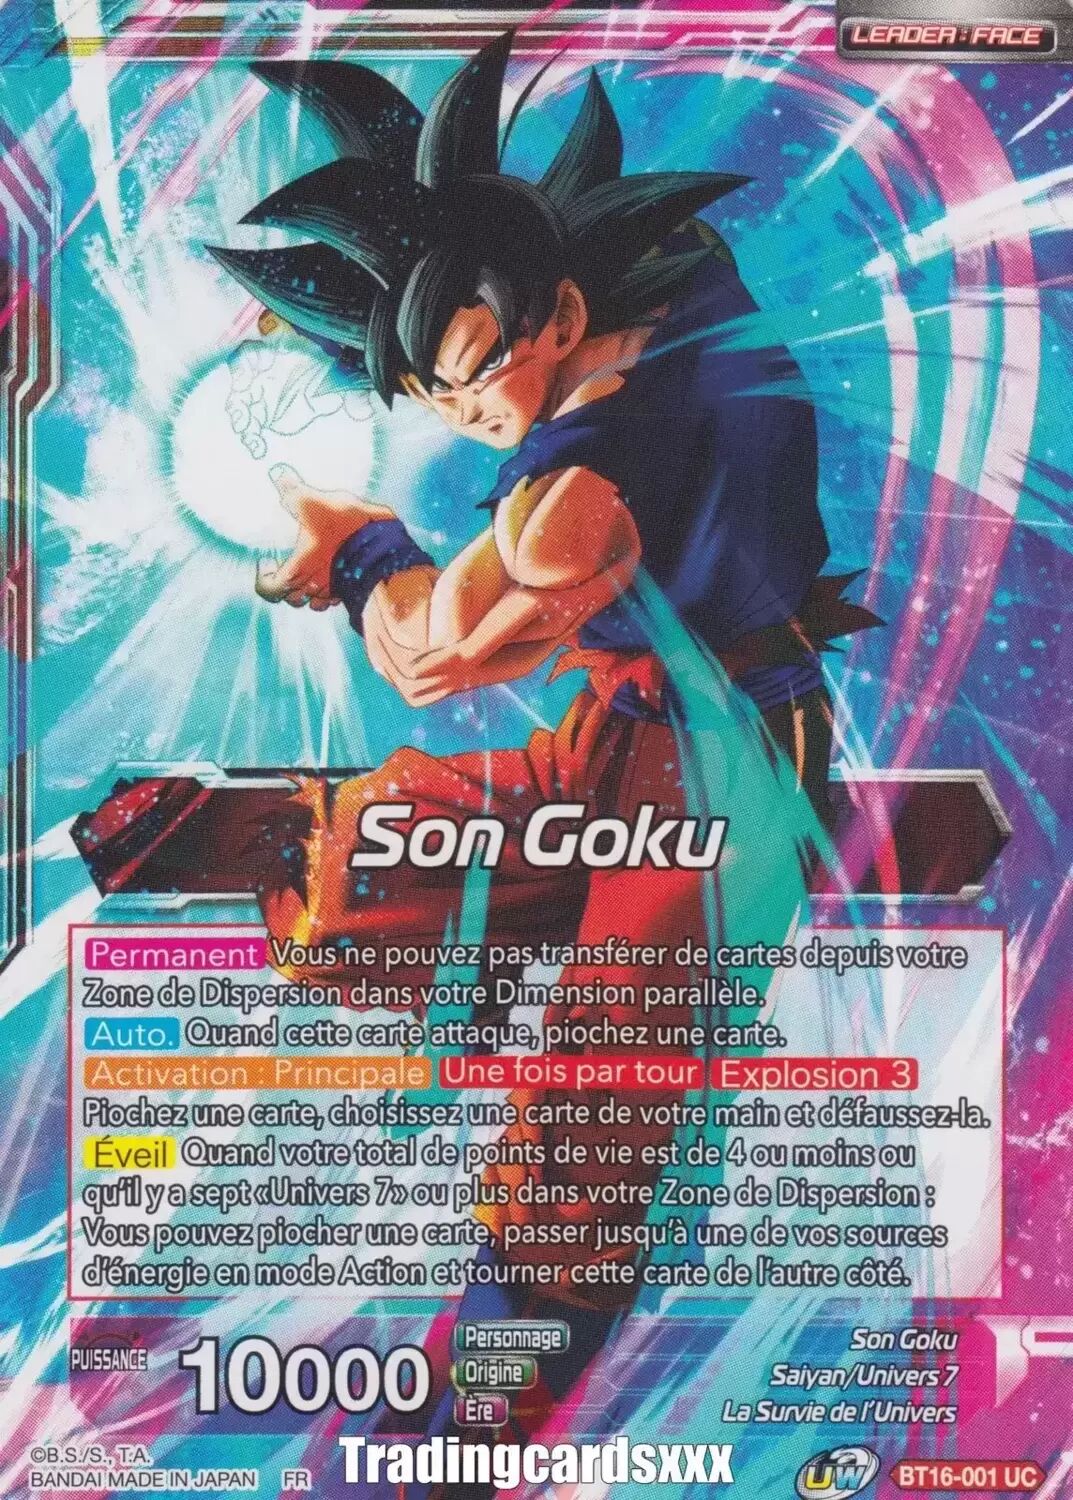 Realm of the Gods [BT16] - Son Goku // Son Goku, Guerrier suprême